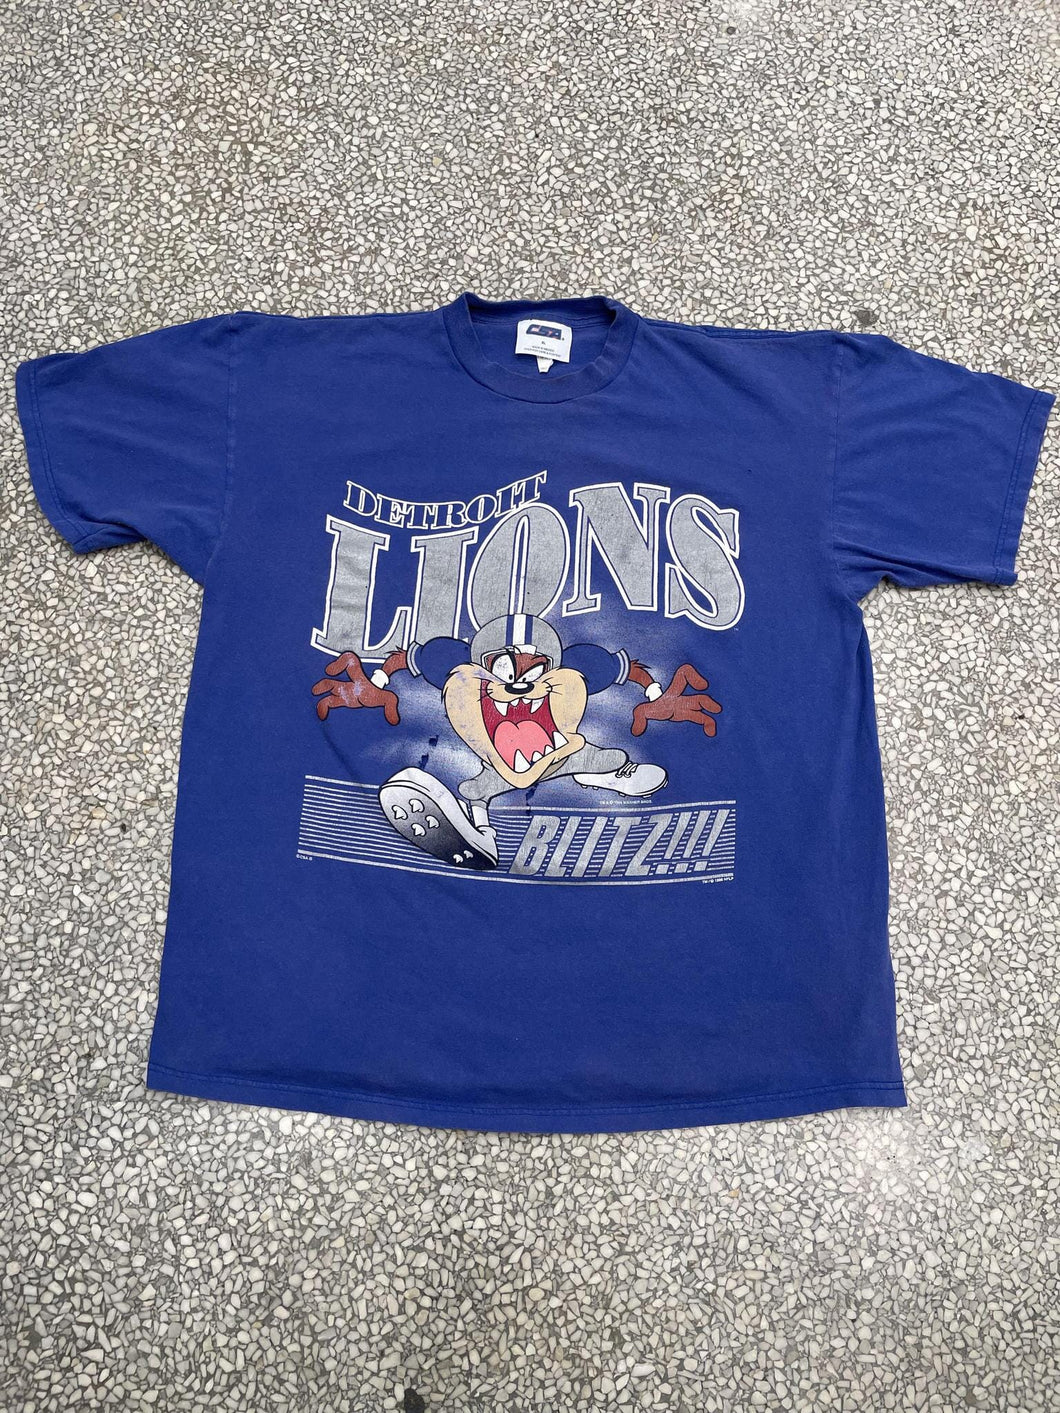 Detroit Lions Vintage 1996 Taz Blitz!!! Faded Blue ABC Vintage 